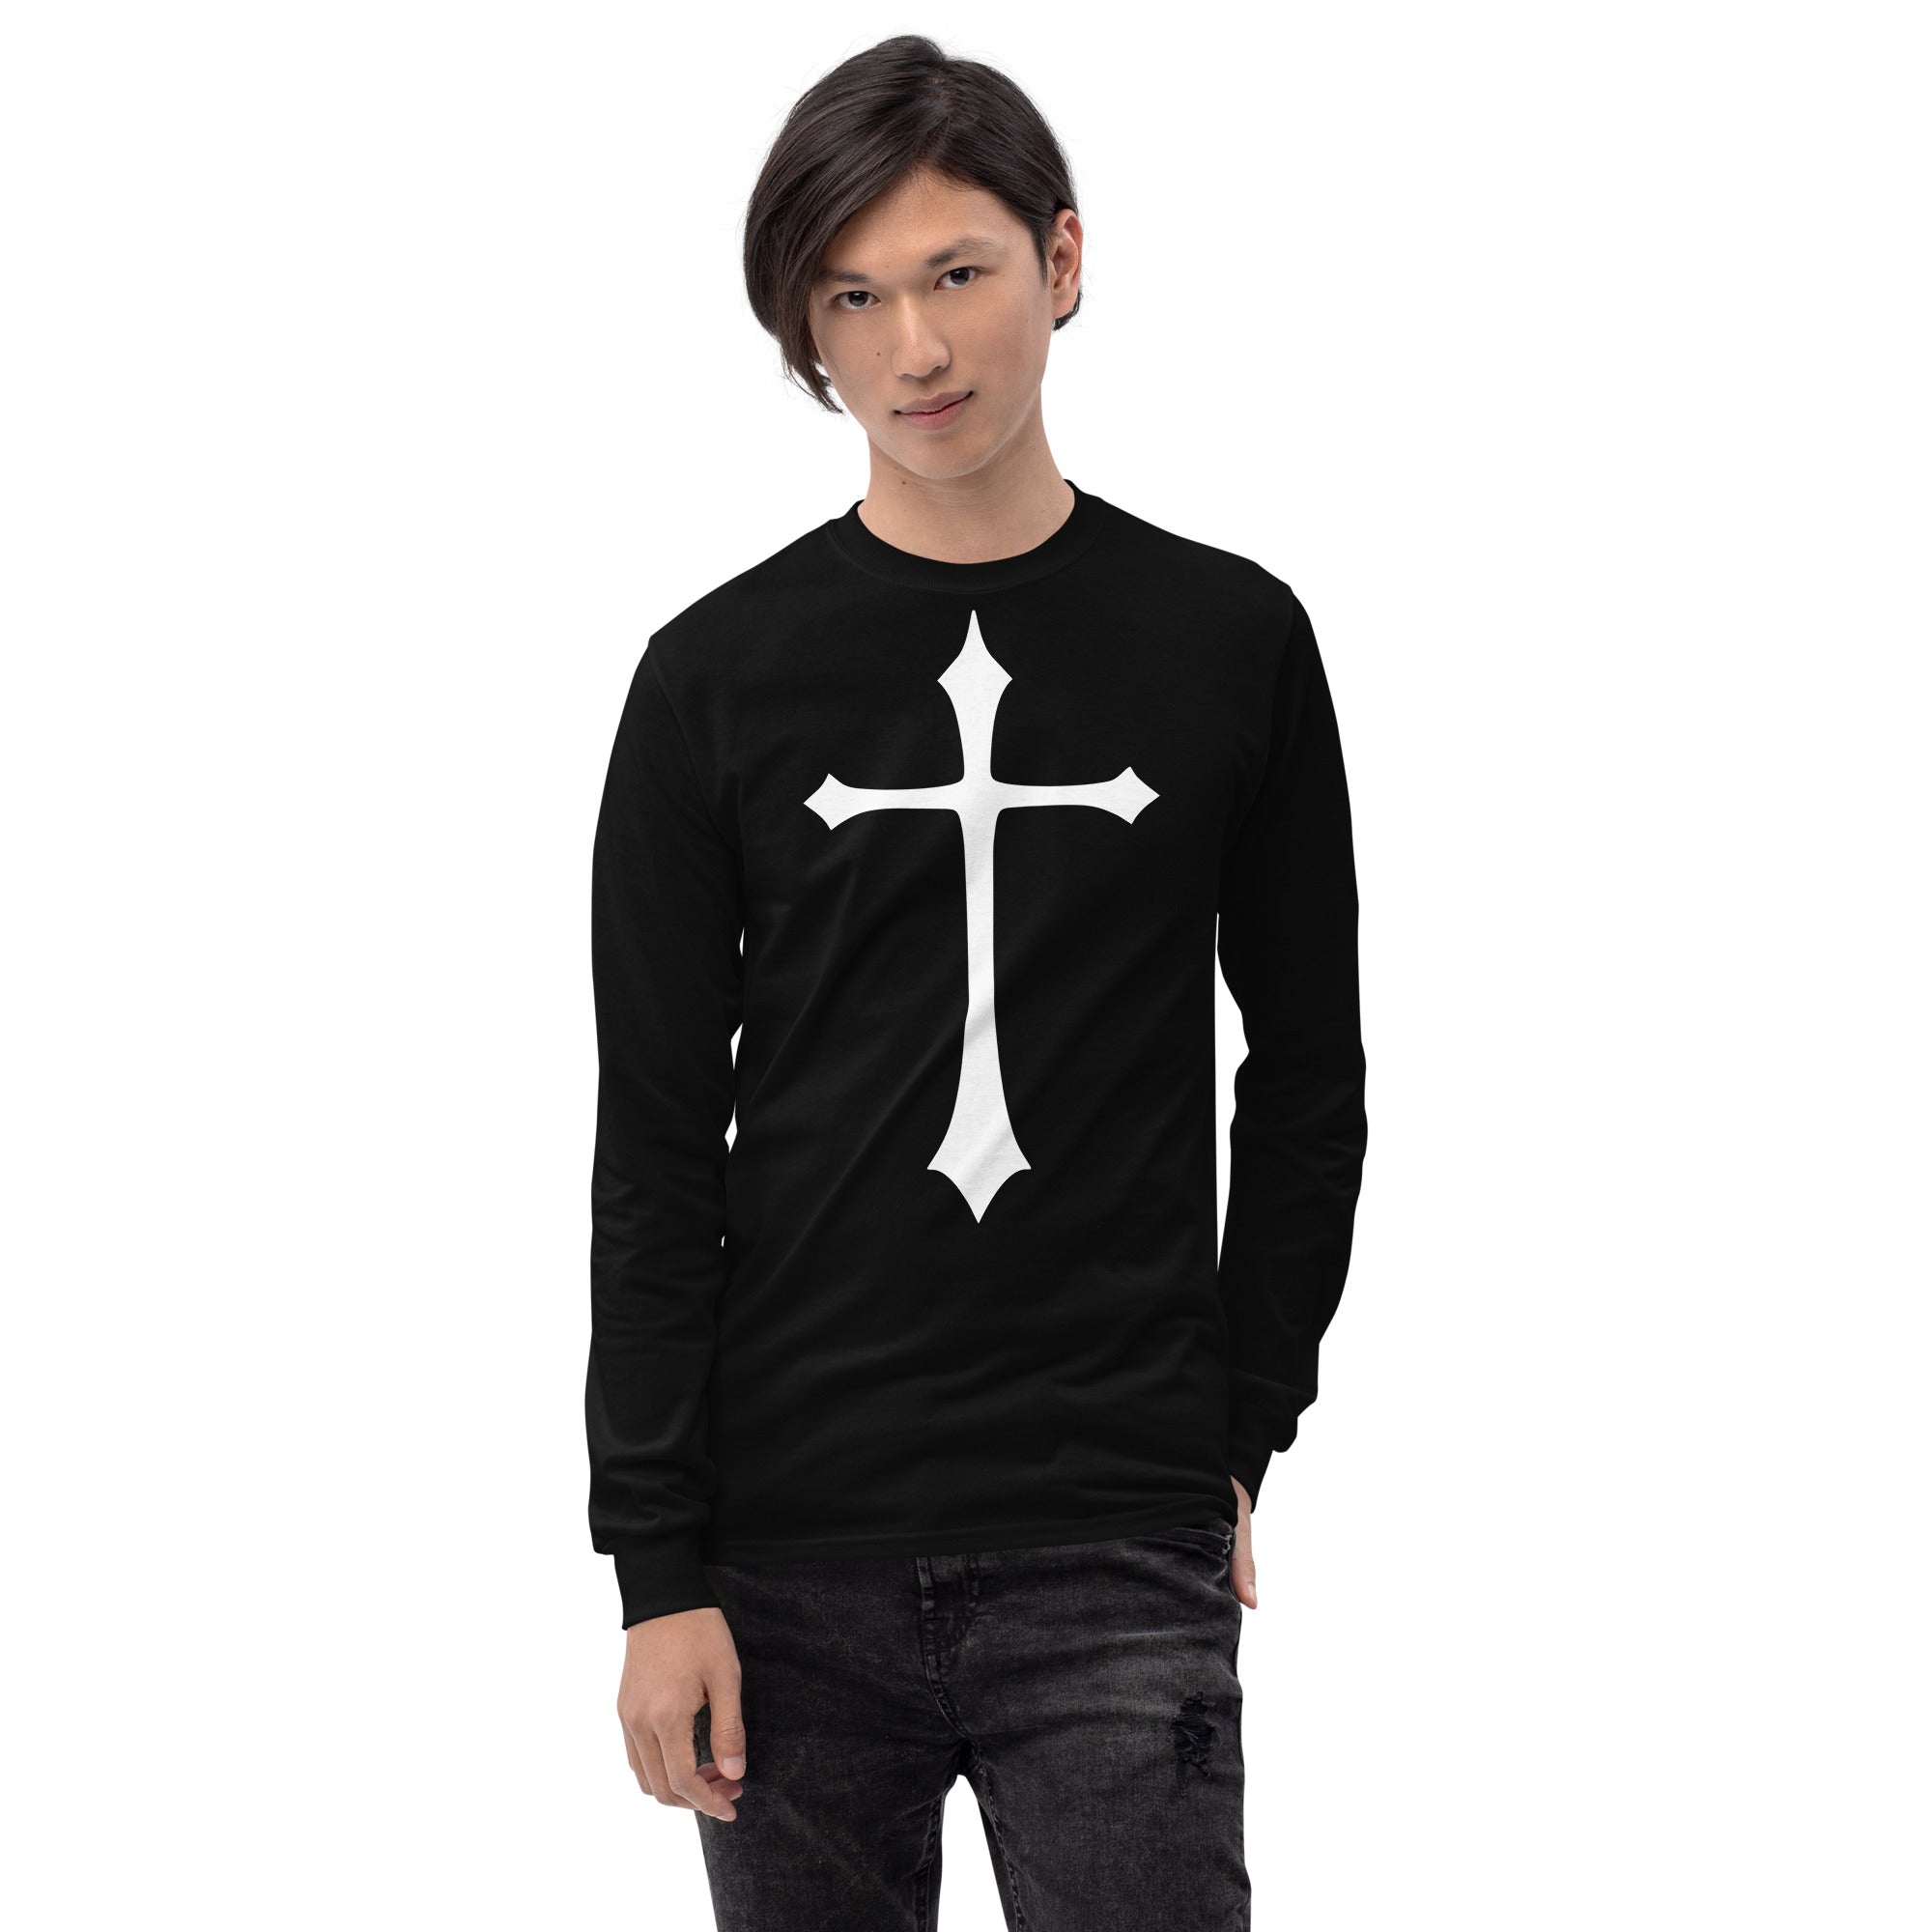 White Gothic Medeival Holy Cross Long Sleeve Shirt